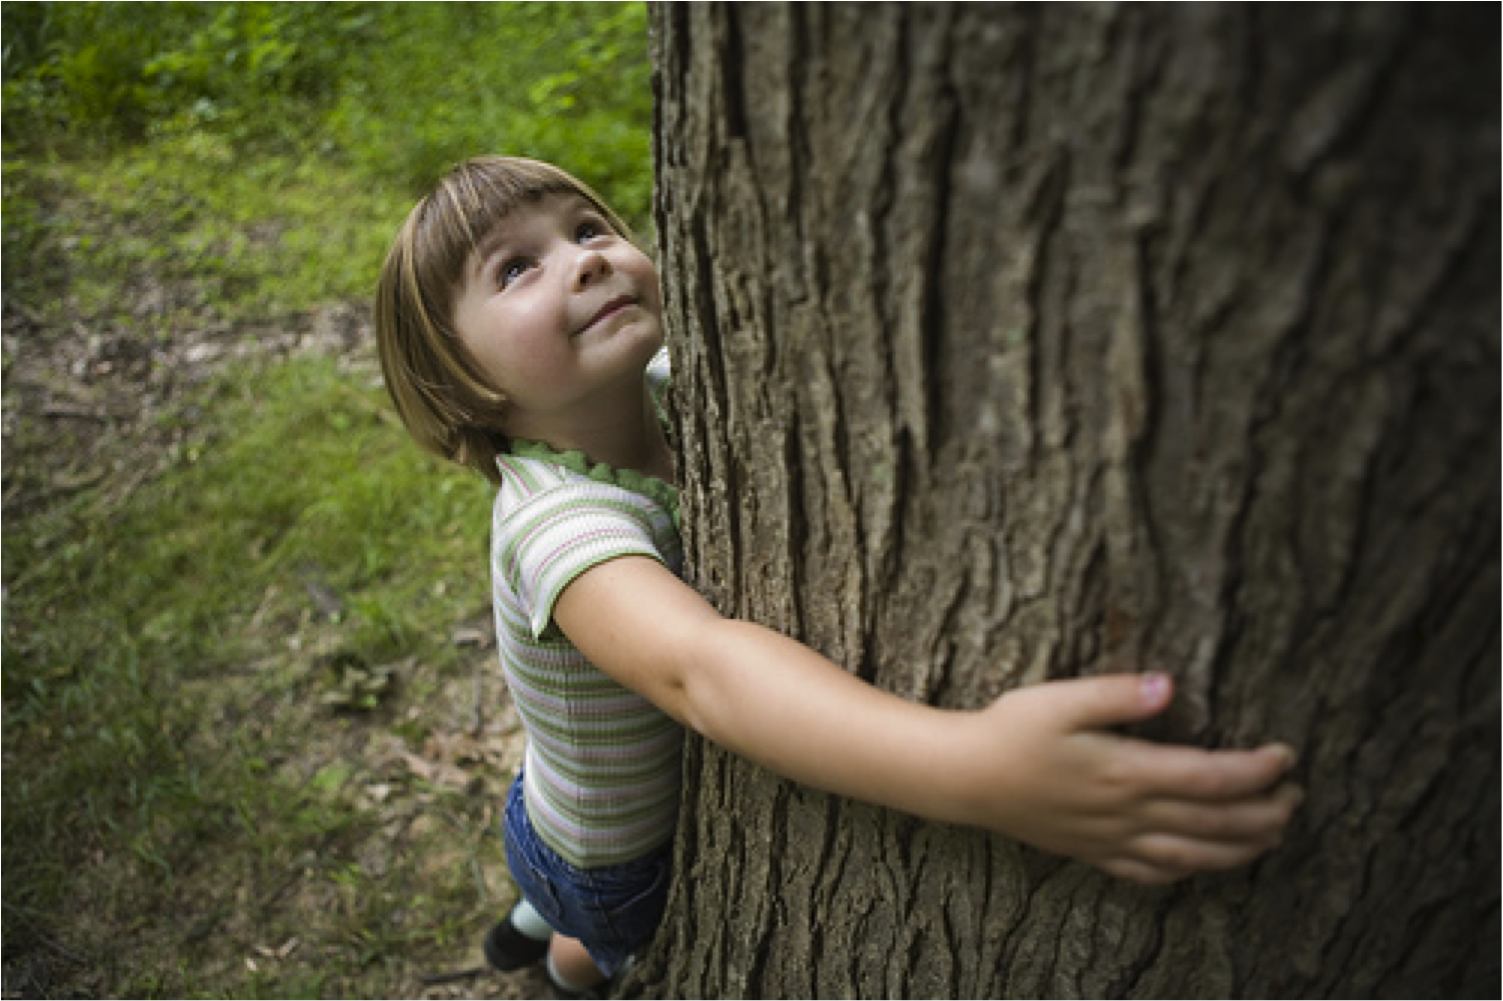 Человек заботится о природе. Дерево для детей. Дети и природа. Природа деревьев для детей. Любовь детей к природе.